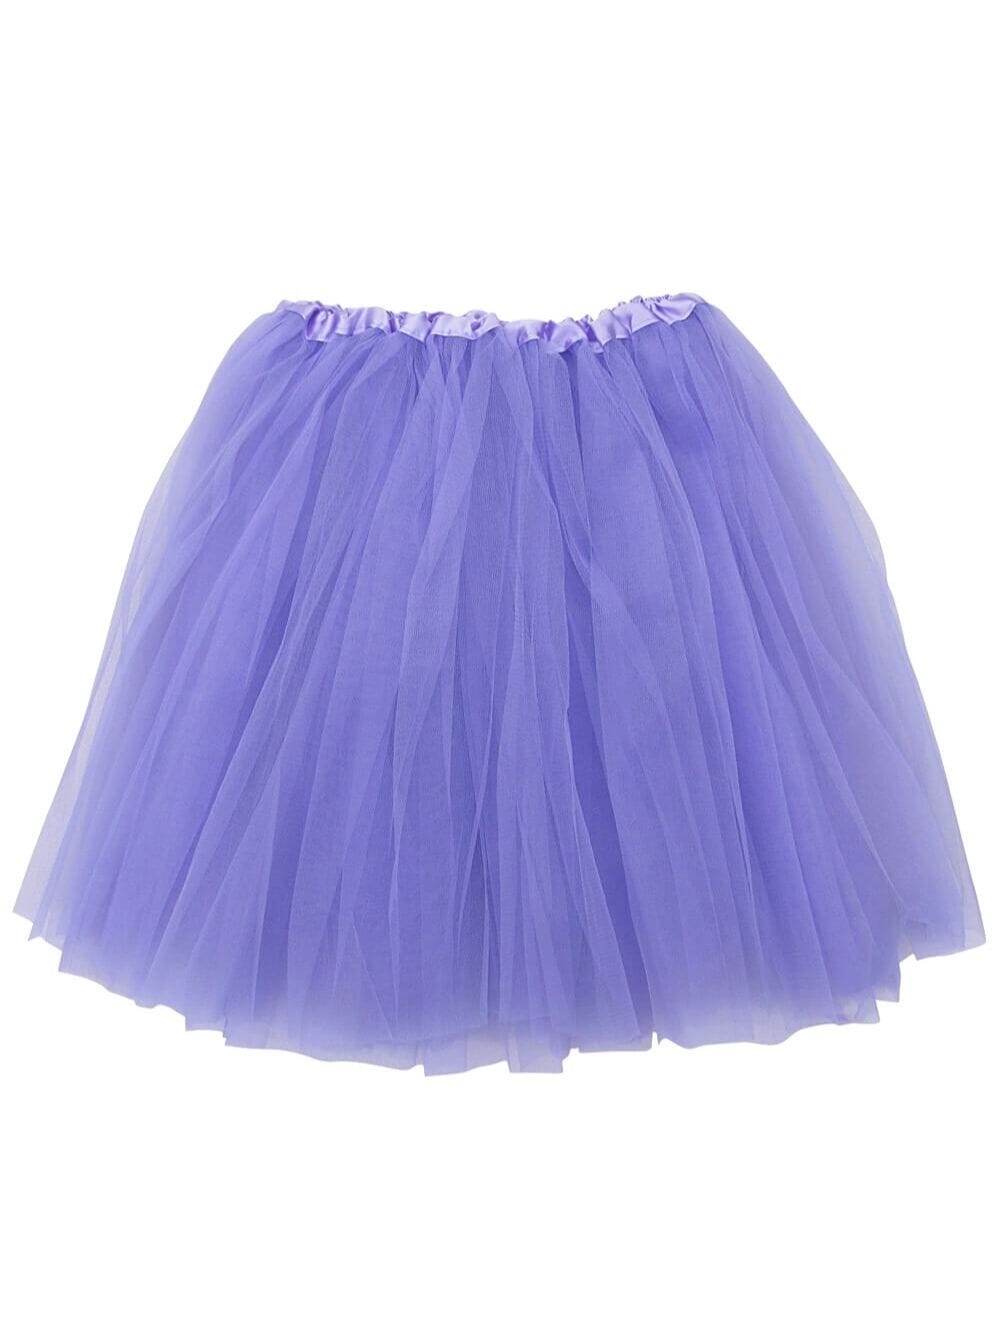 Lavender Tutu Skirt for Adult - Women's Size 3-Layer Basic Ballet Costume Dance Tutus - Sydney So Sweet